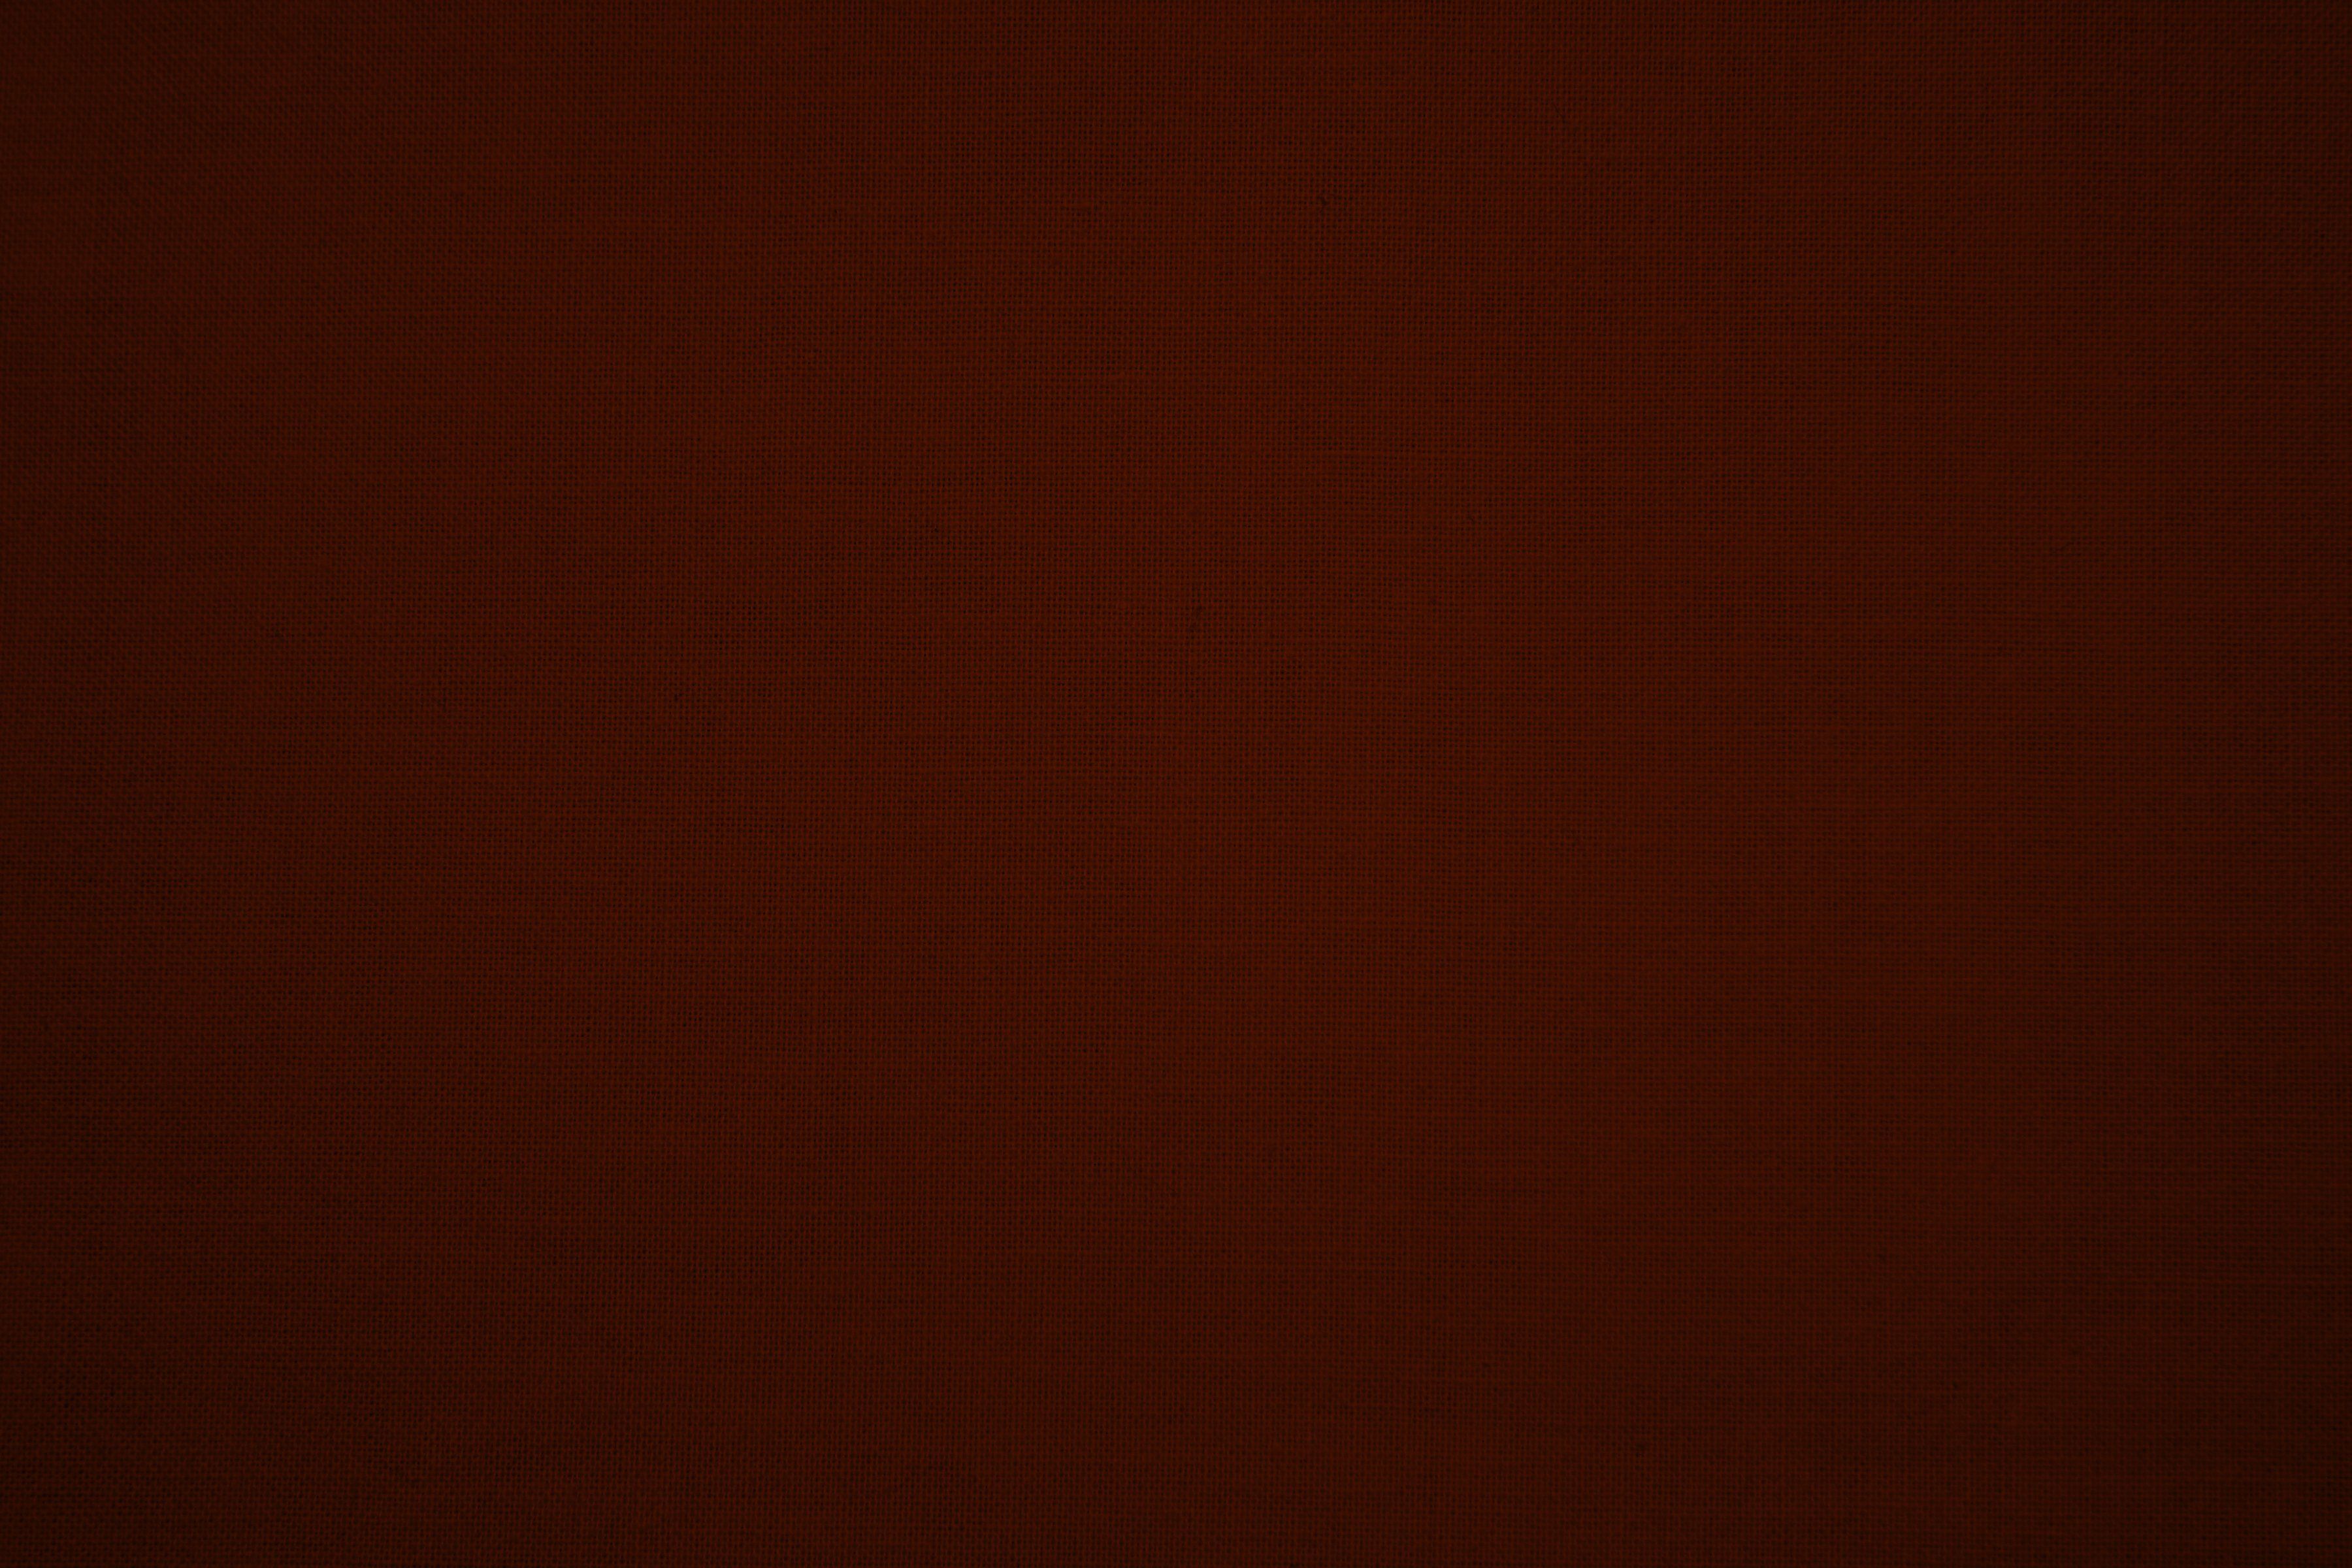 maroon wallpaper,black,red,brown,orange,maroon